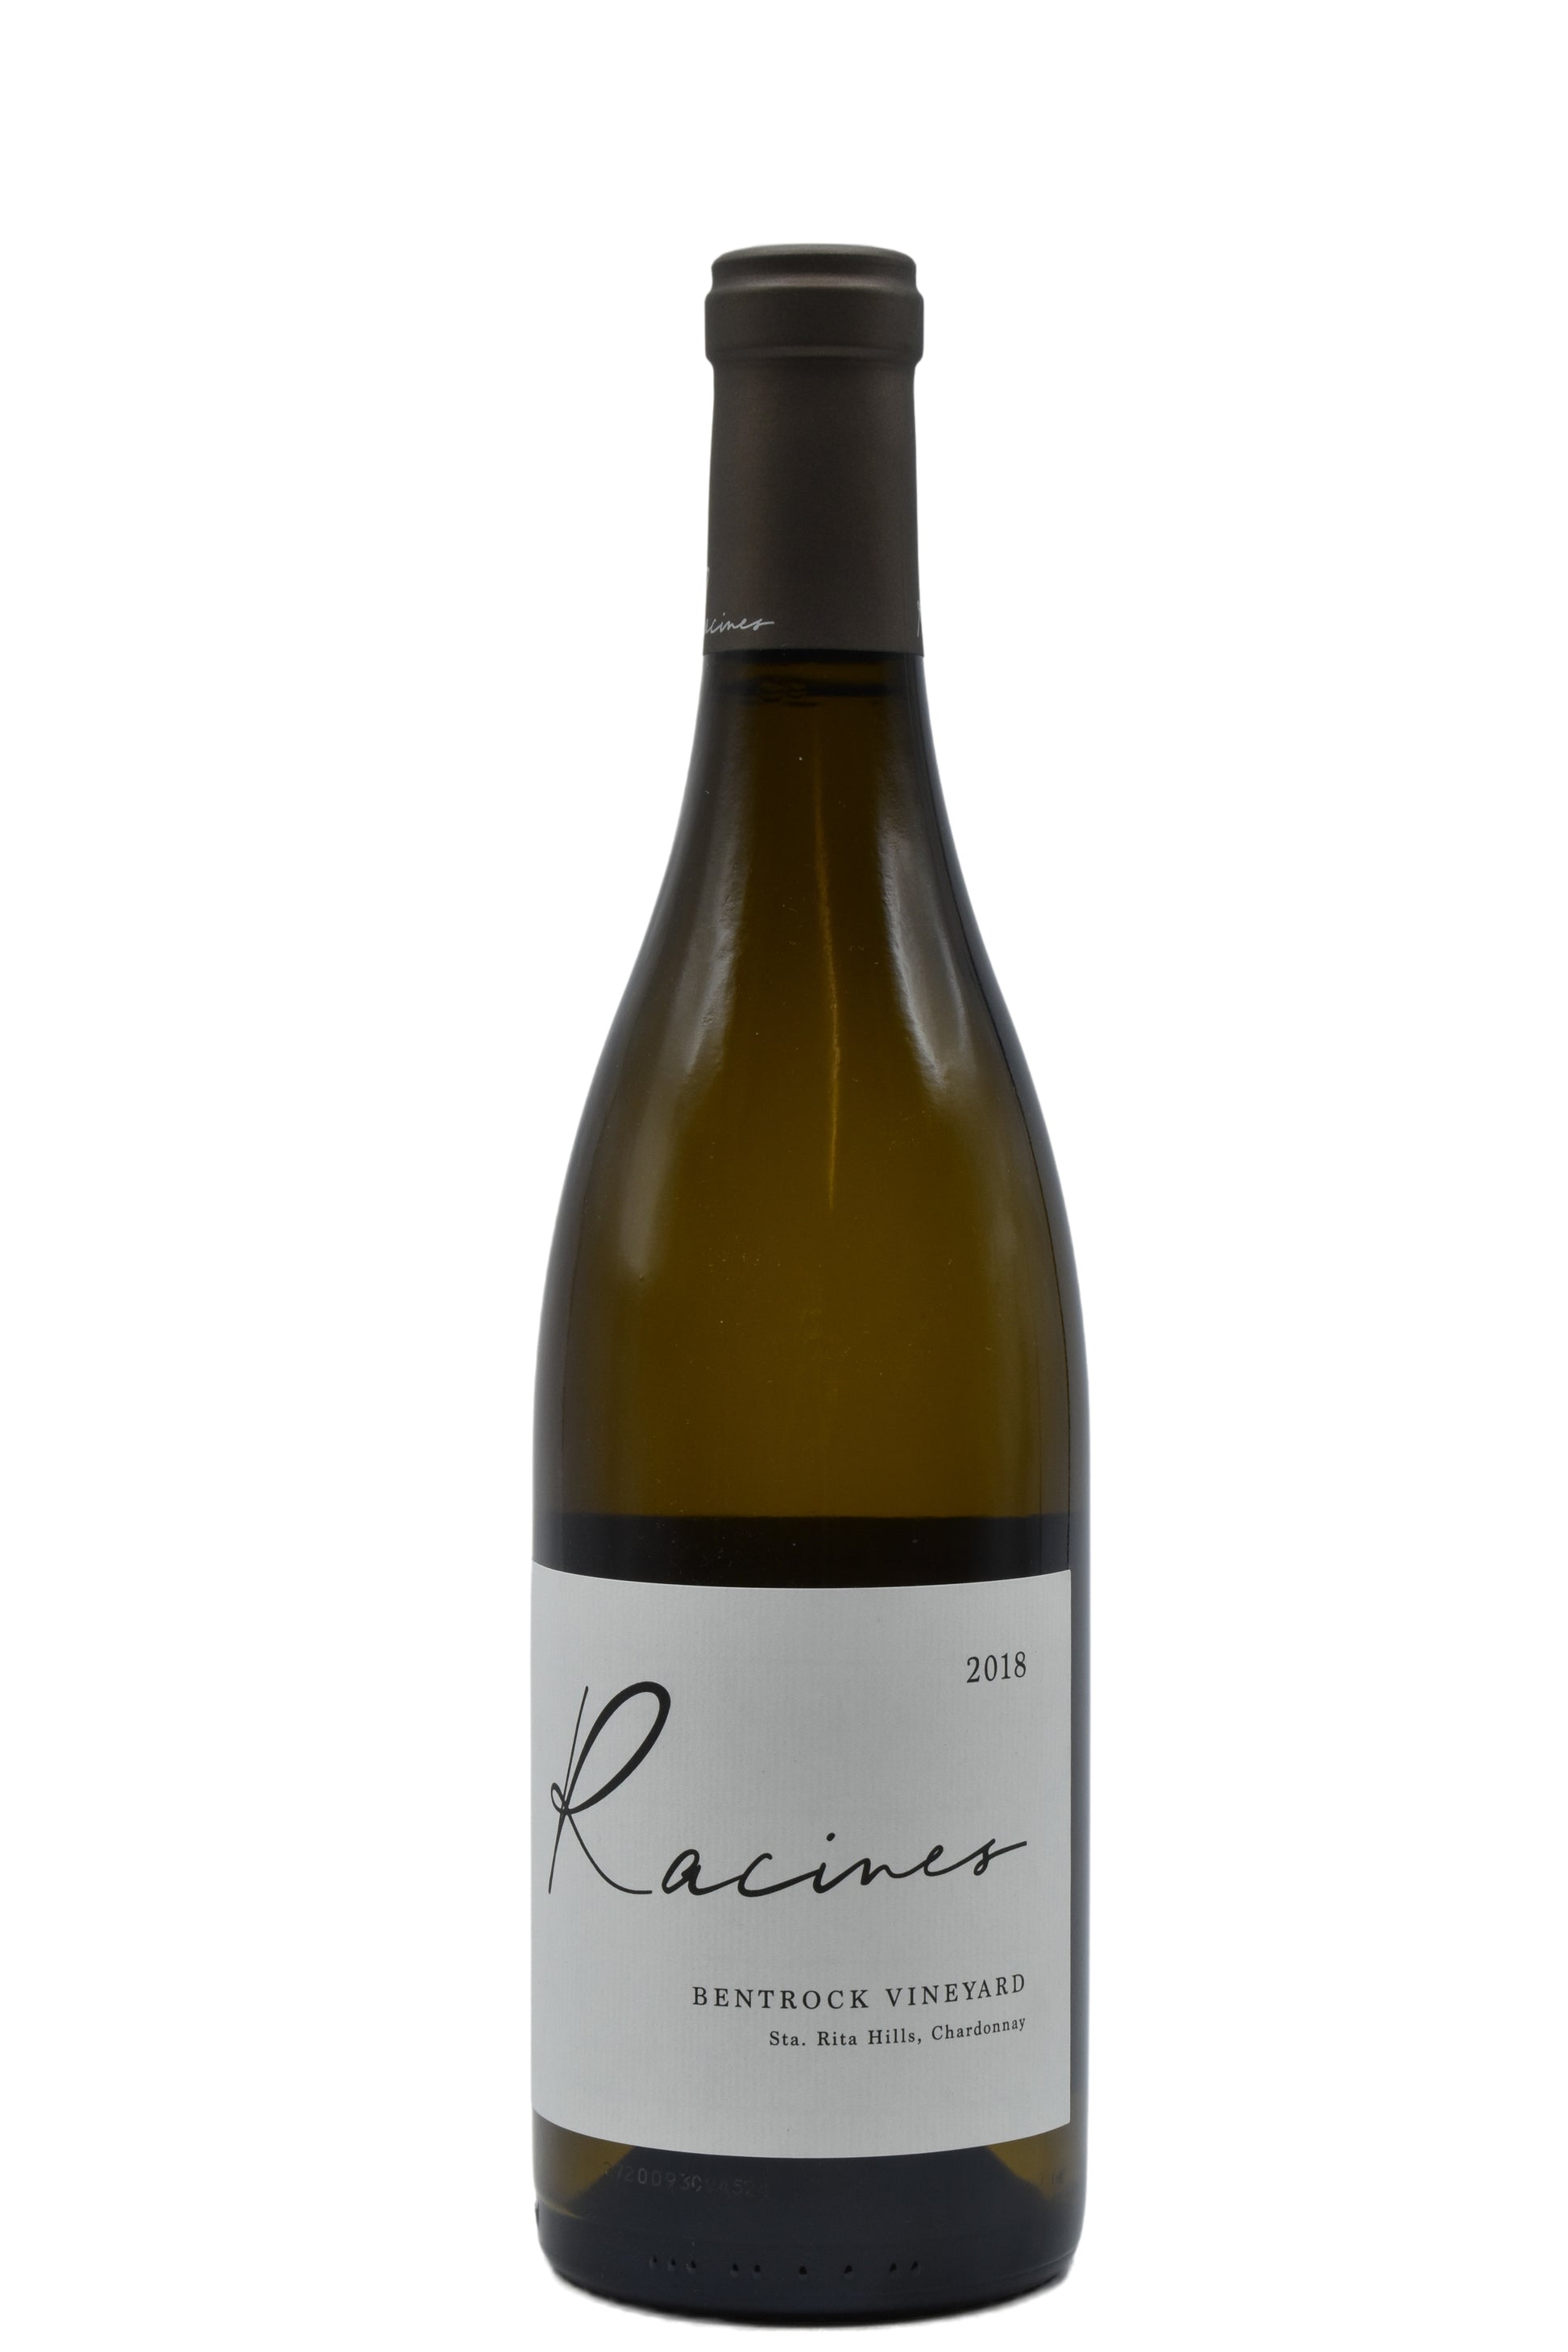 2018 Racines, Bentrock Vineyard Chardonnay 750ml - Walker Wine Co.